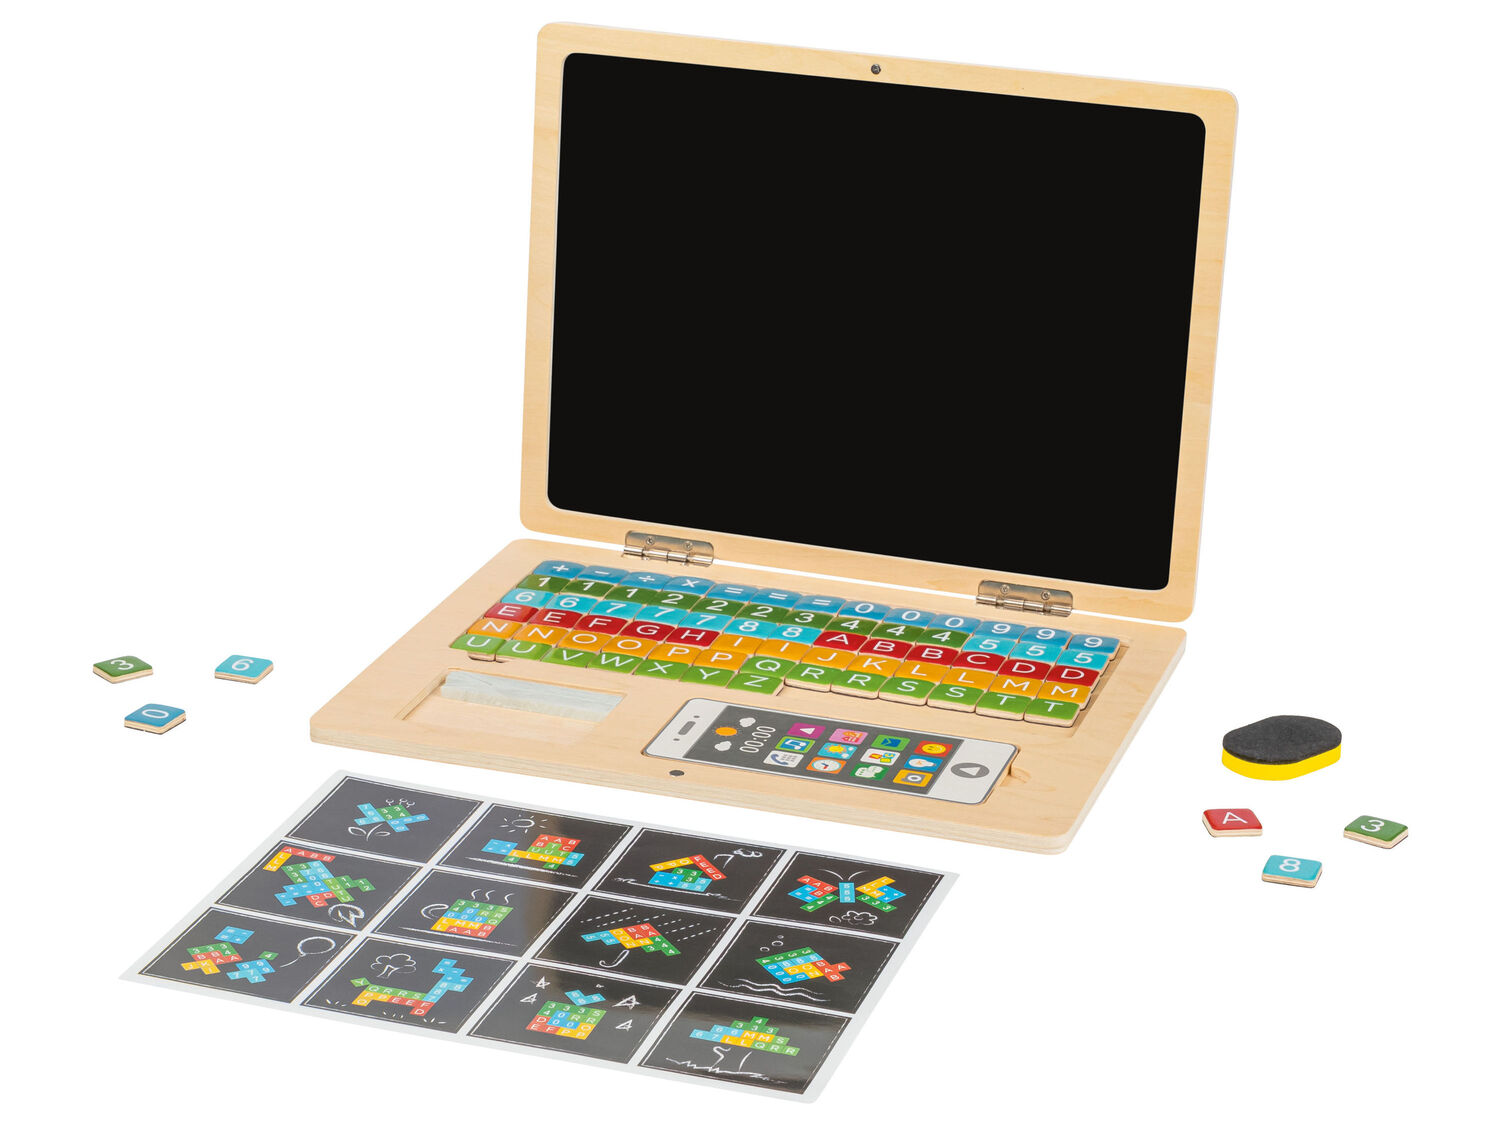 Calendario magnetico o computer in legno per bambini Playtive, prezzo 9.99 € 
- ...